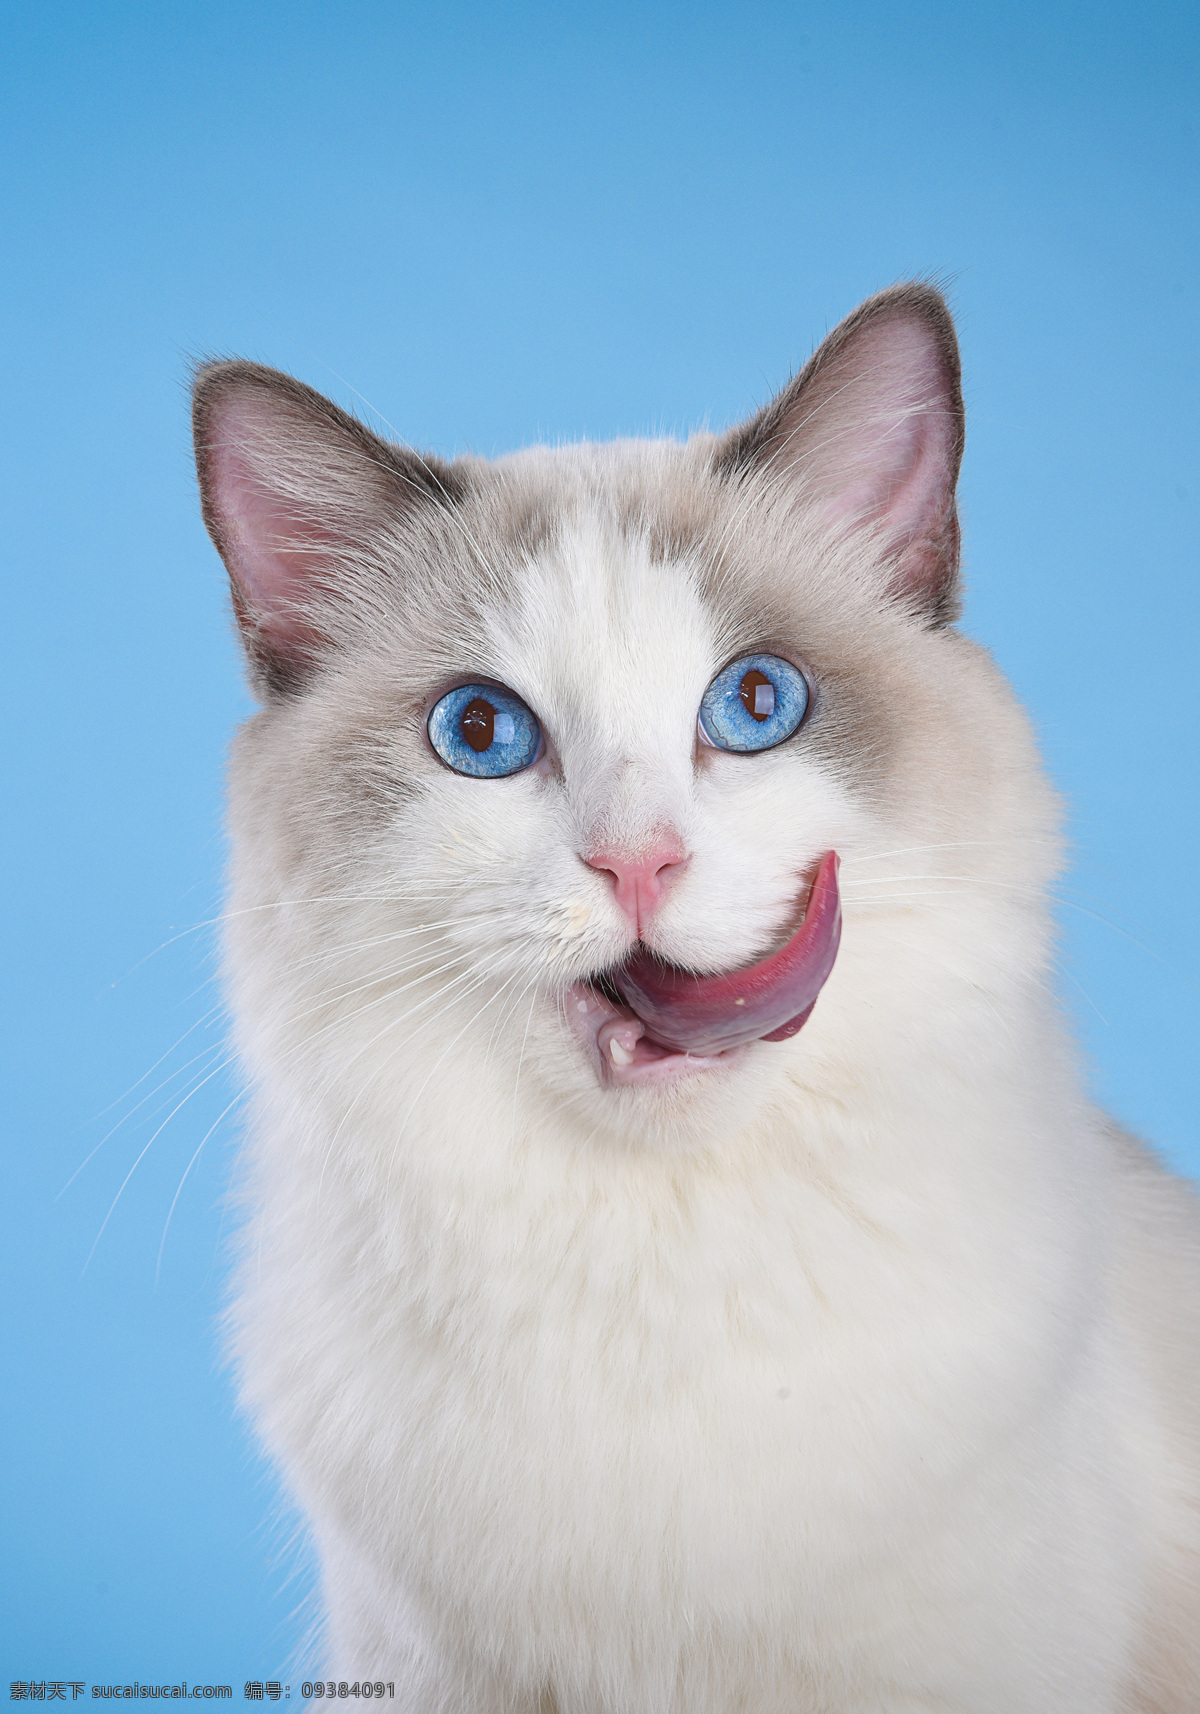 蓝 眼睛 布偶 猫 可爱 动物 宠物 蓝眼睛 布偶猫 生物世界 家禽家畜